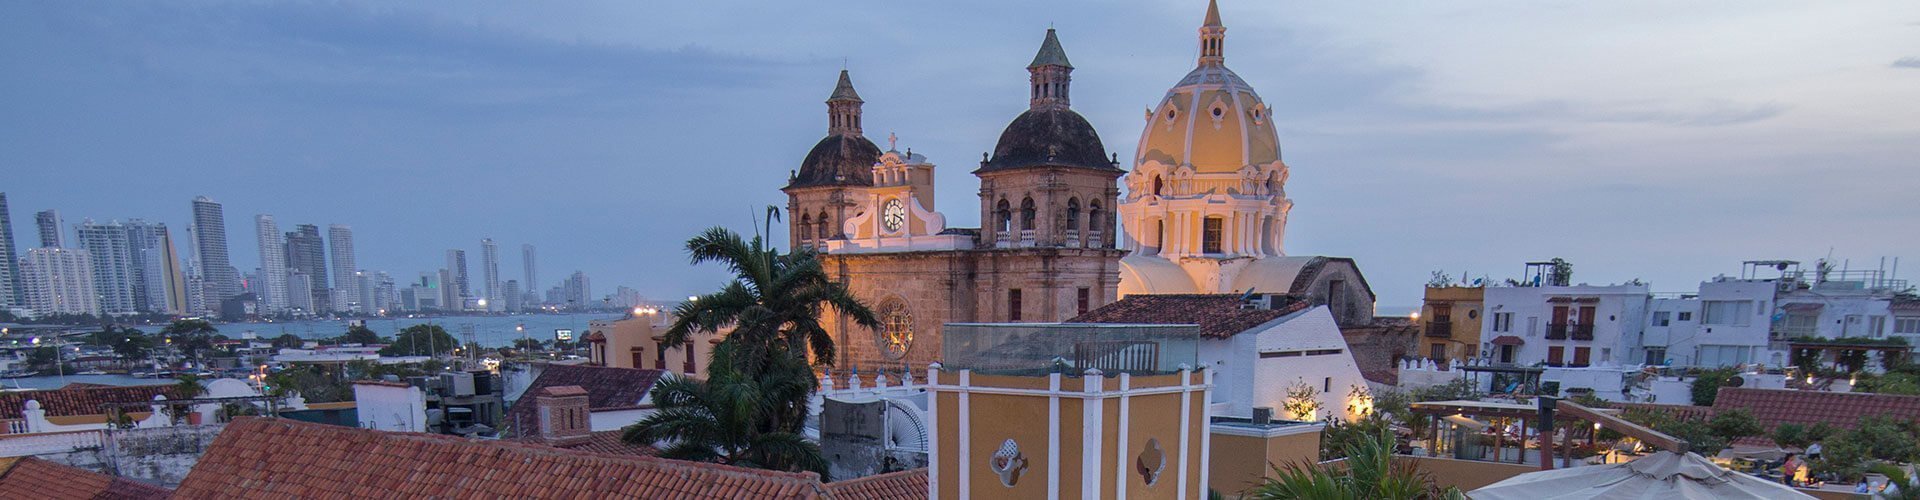 Sophia Hotel - Cartagena de Indias - 